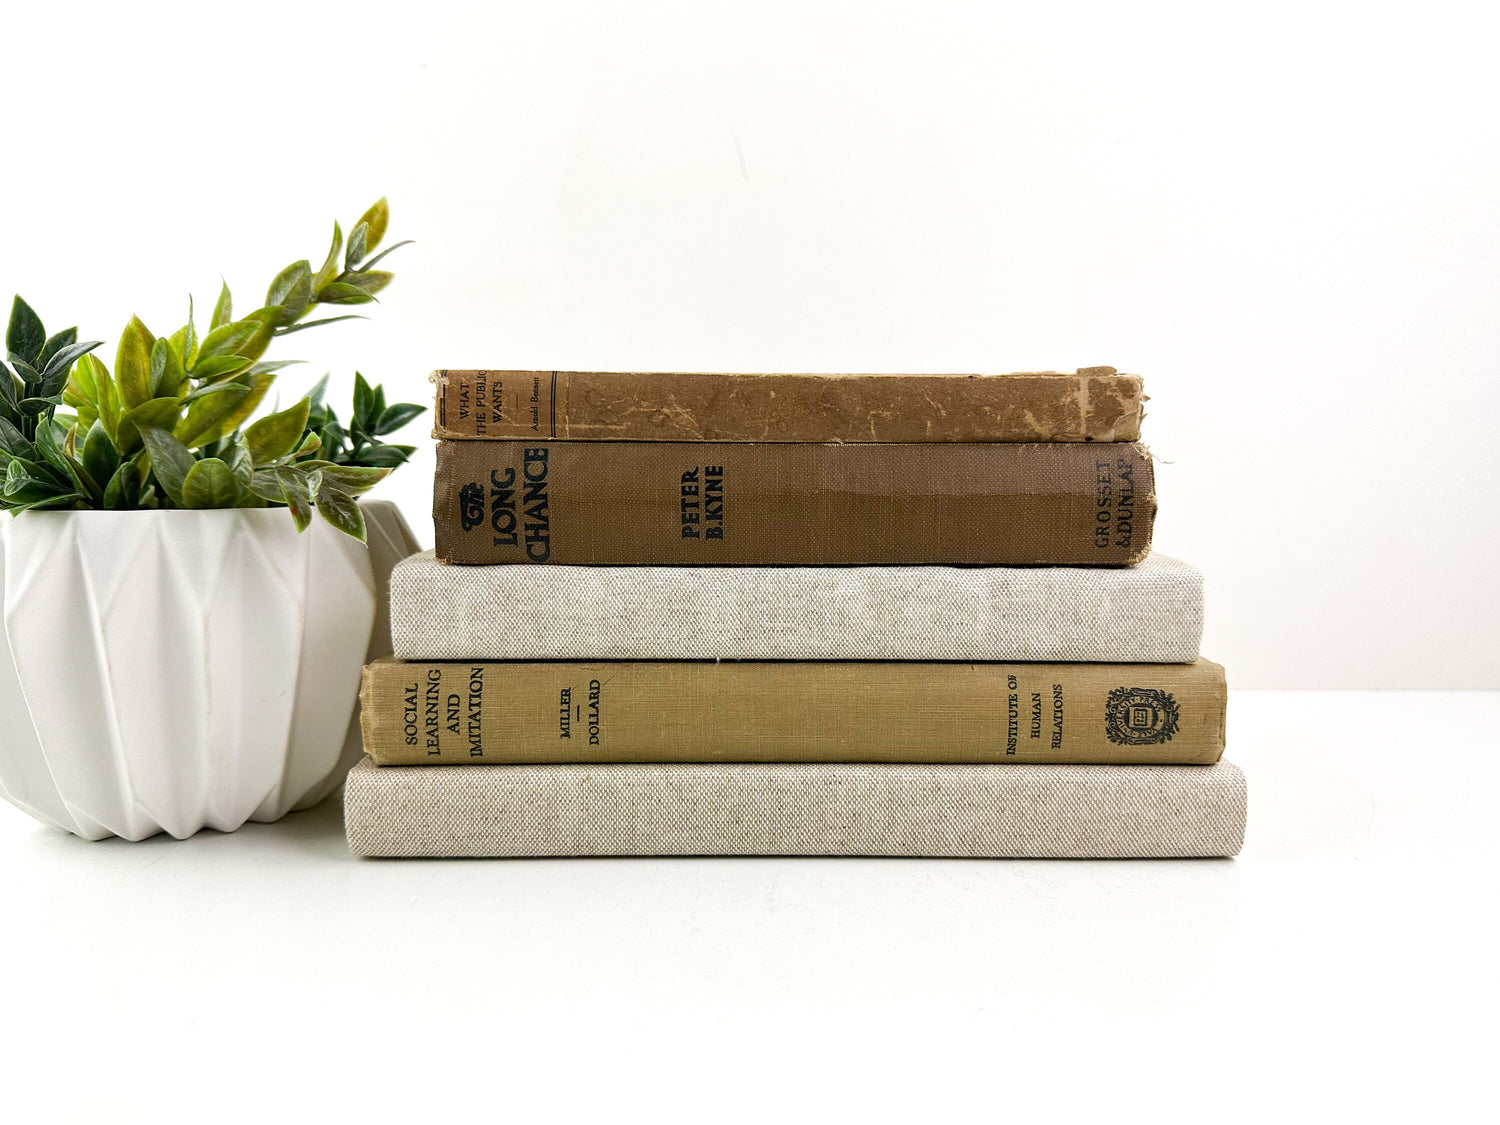 Shelf Decor, Book Set, Decorative Books for Shelf Decor, Modern Decor, Living Room Decor Ideas